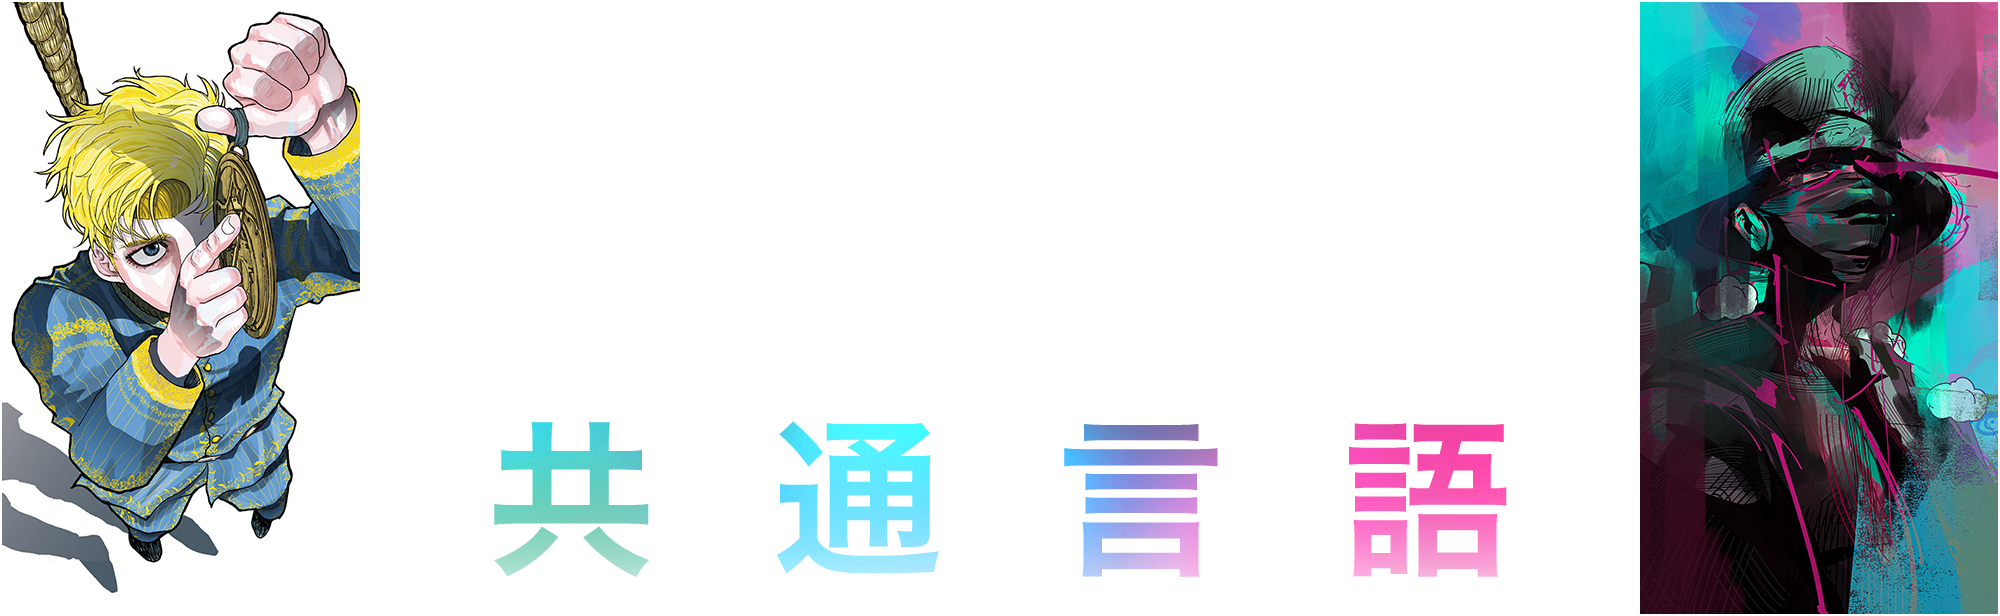 チ。 × amazarashi 往復書簡プロジェクト『共通言語』